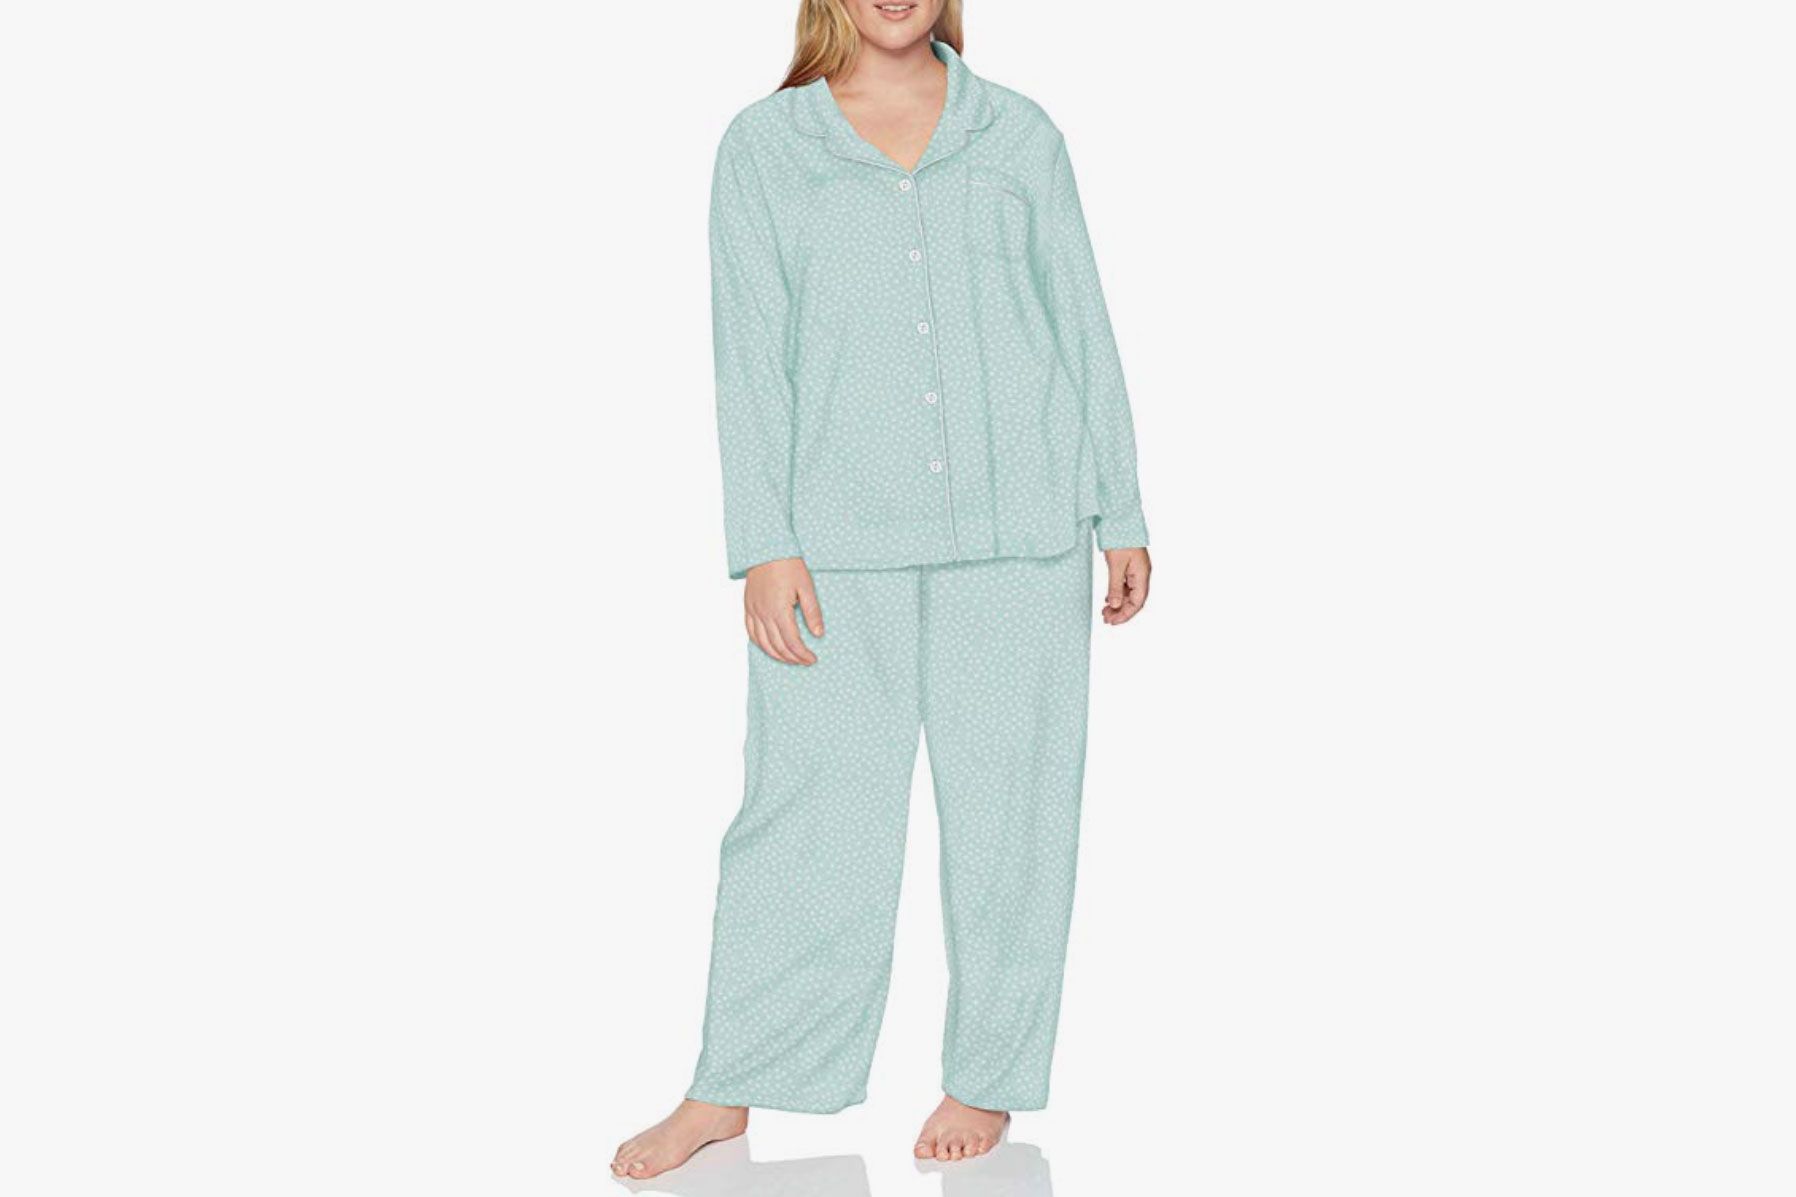 Ladies Women Pyjamas pj Set Long Sleeve Nightwear Cotton Sleepwear Lounge Wear